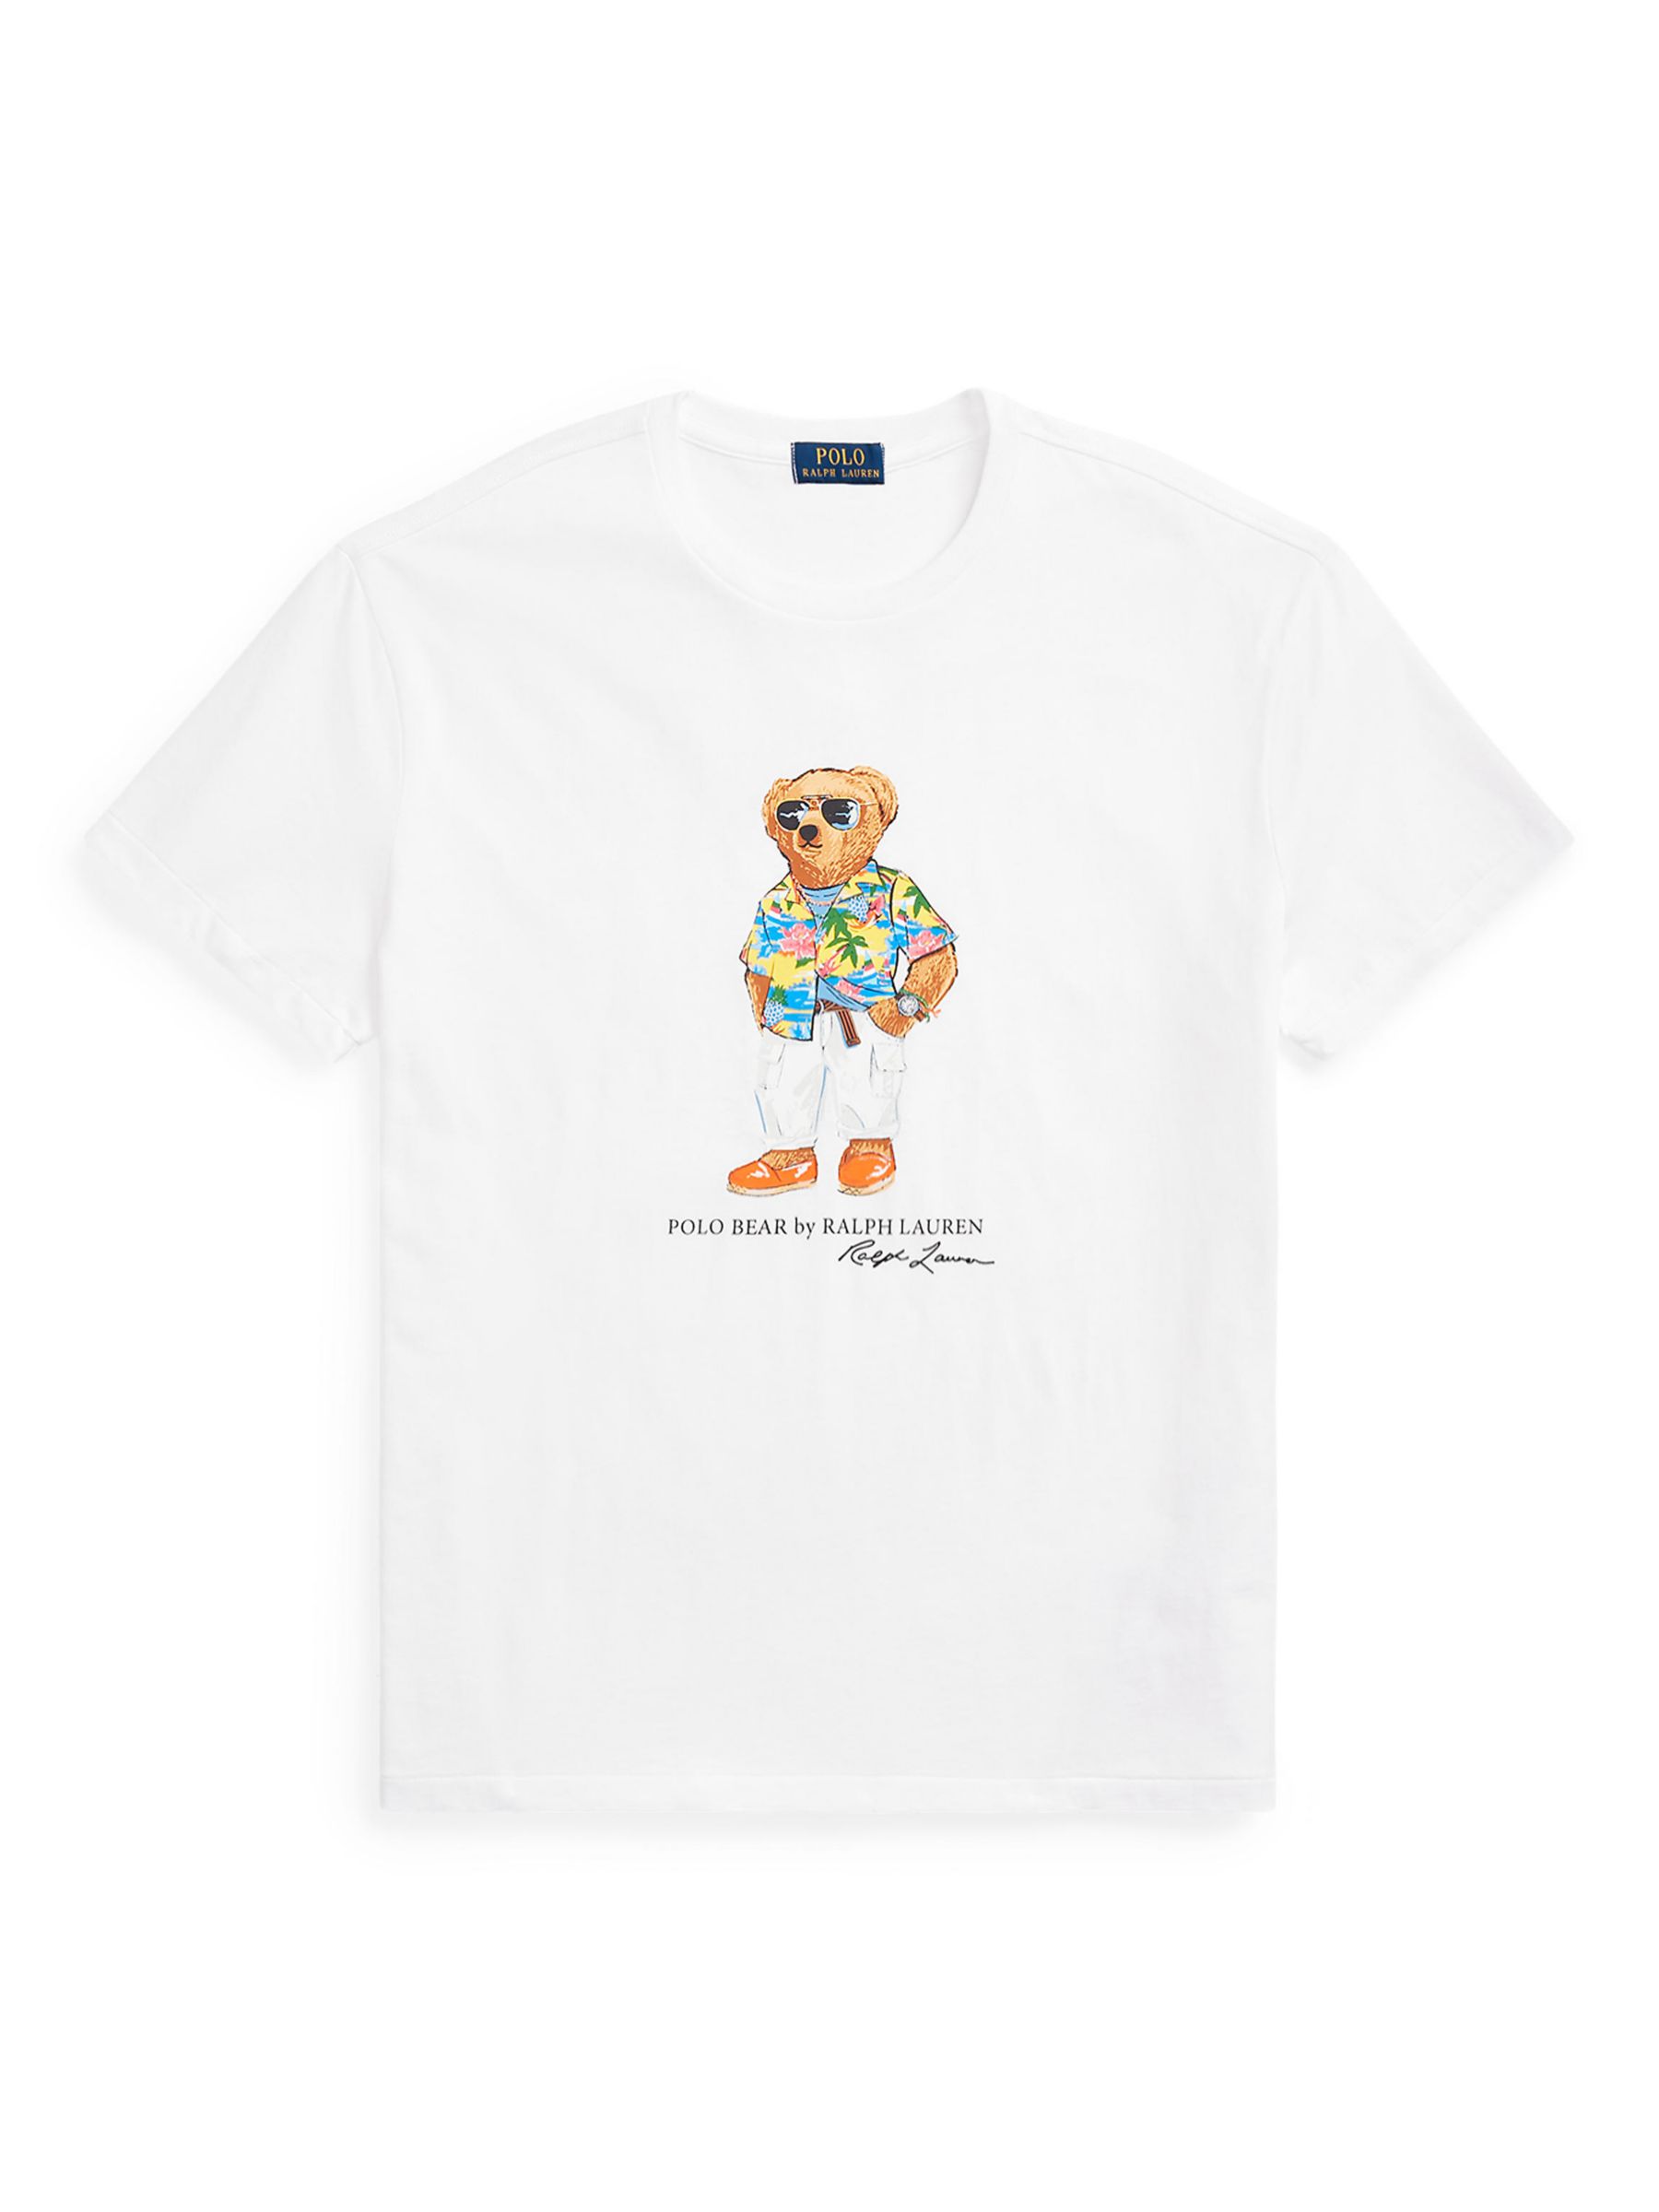 Ralph Lauren Polo Bear Jersey T-Shirt, Whbch Clubbear, S